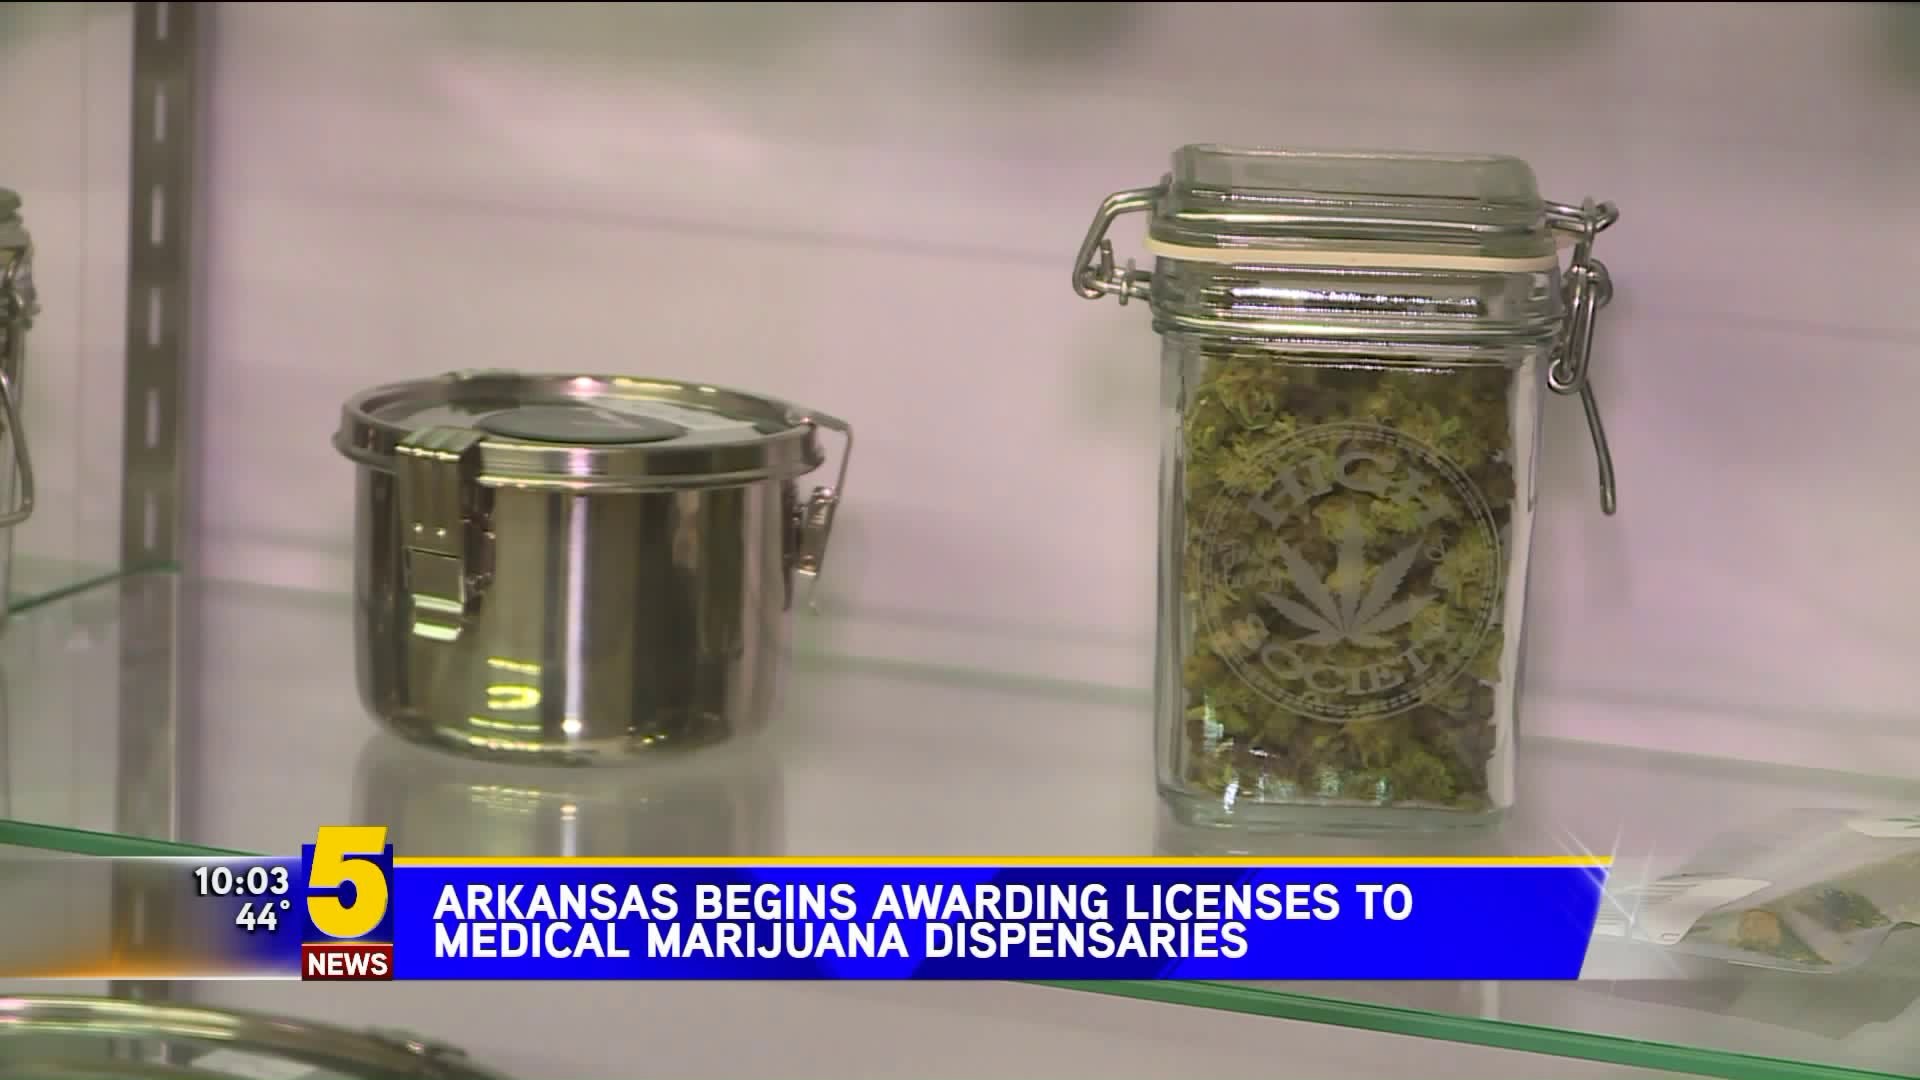 Arkansas begins awarding licenses to medical marijuana dispensaries